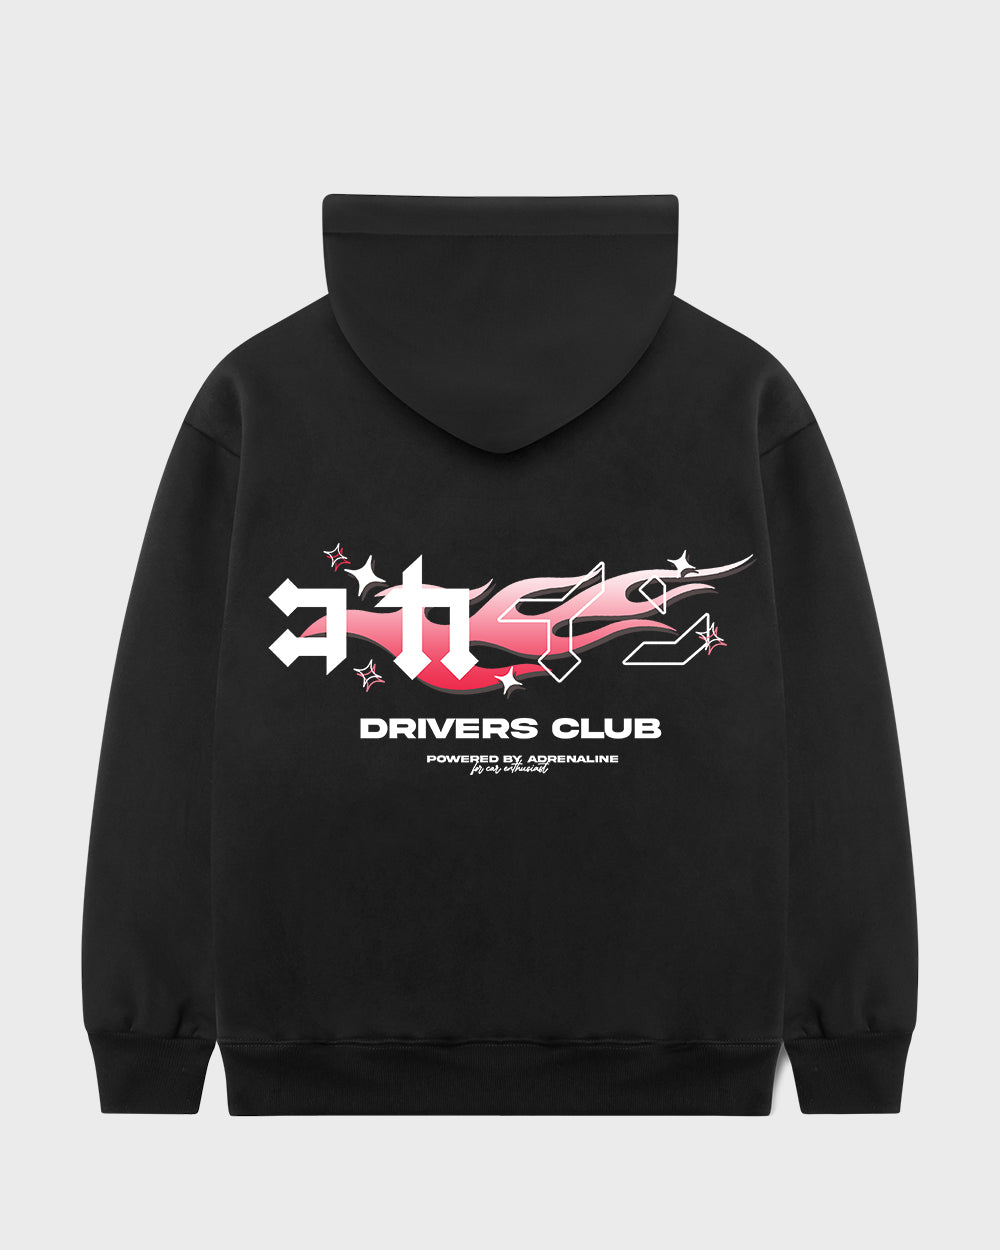 "Drivers Club" Hoodie // BLACK